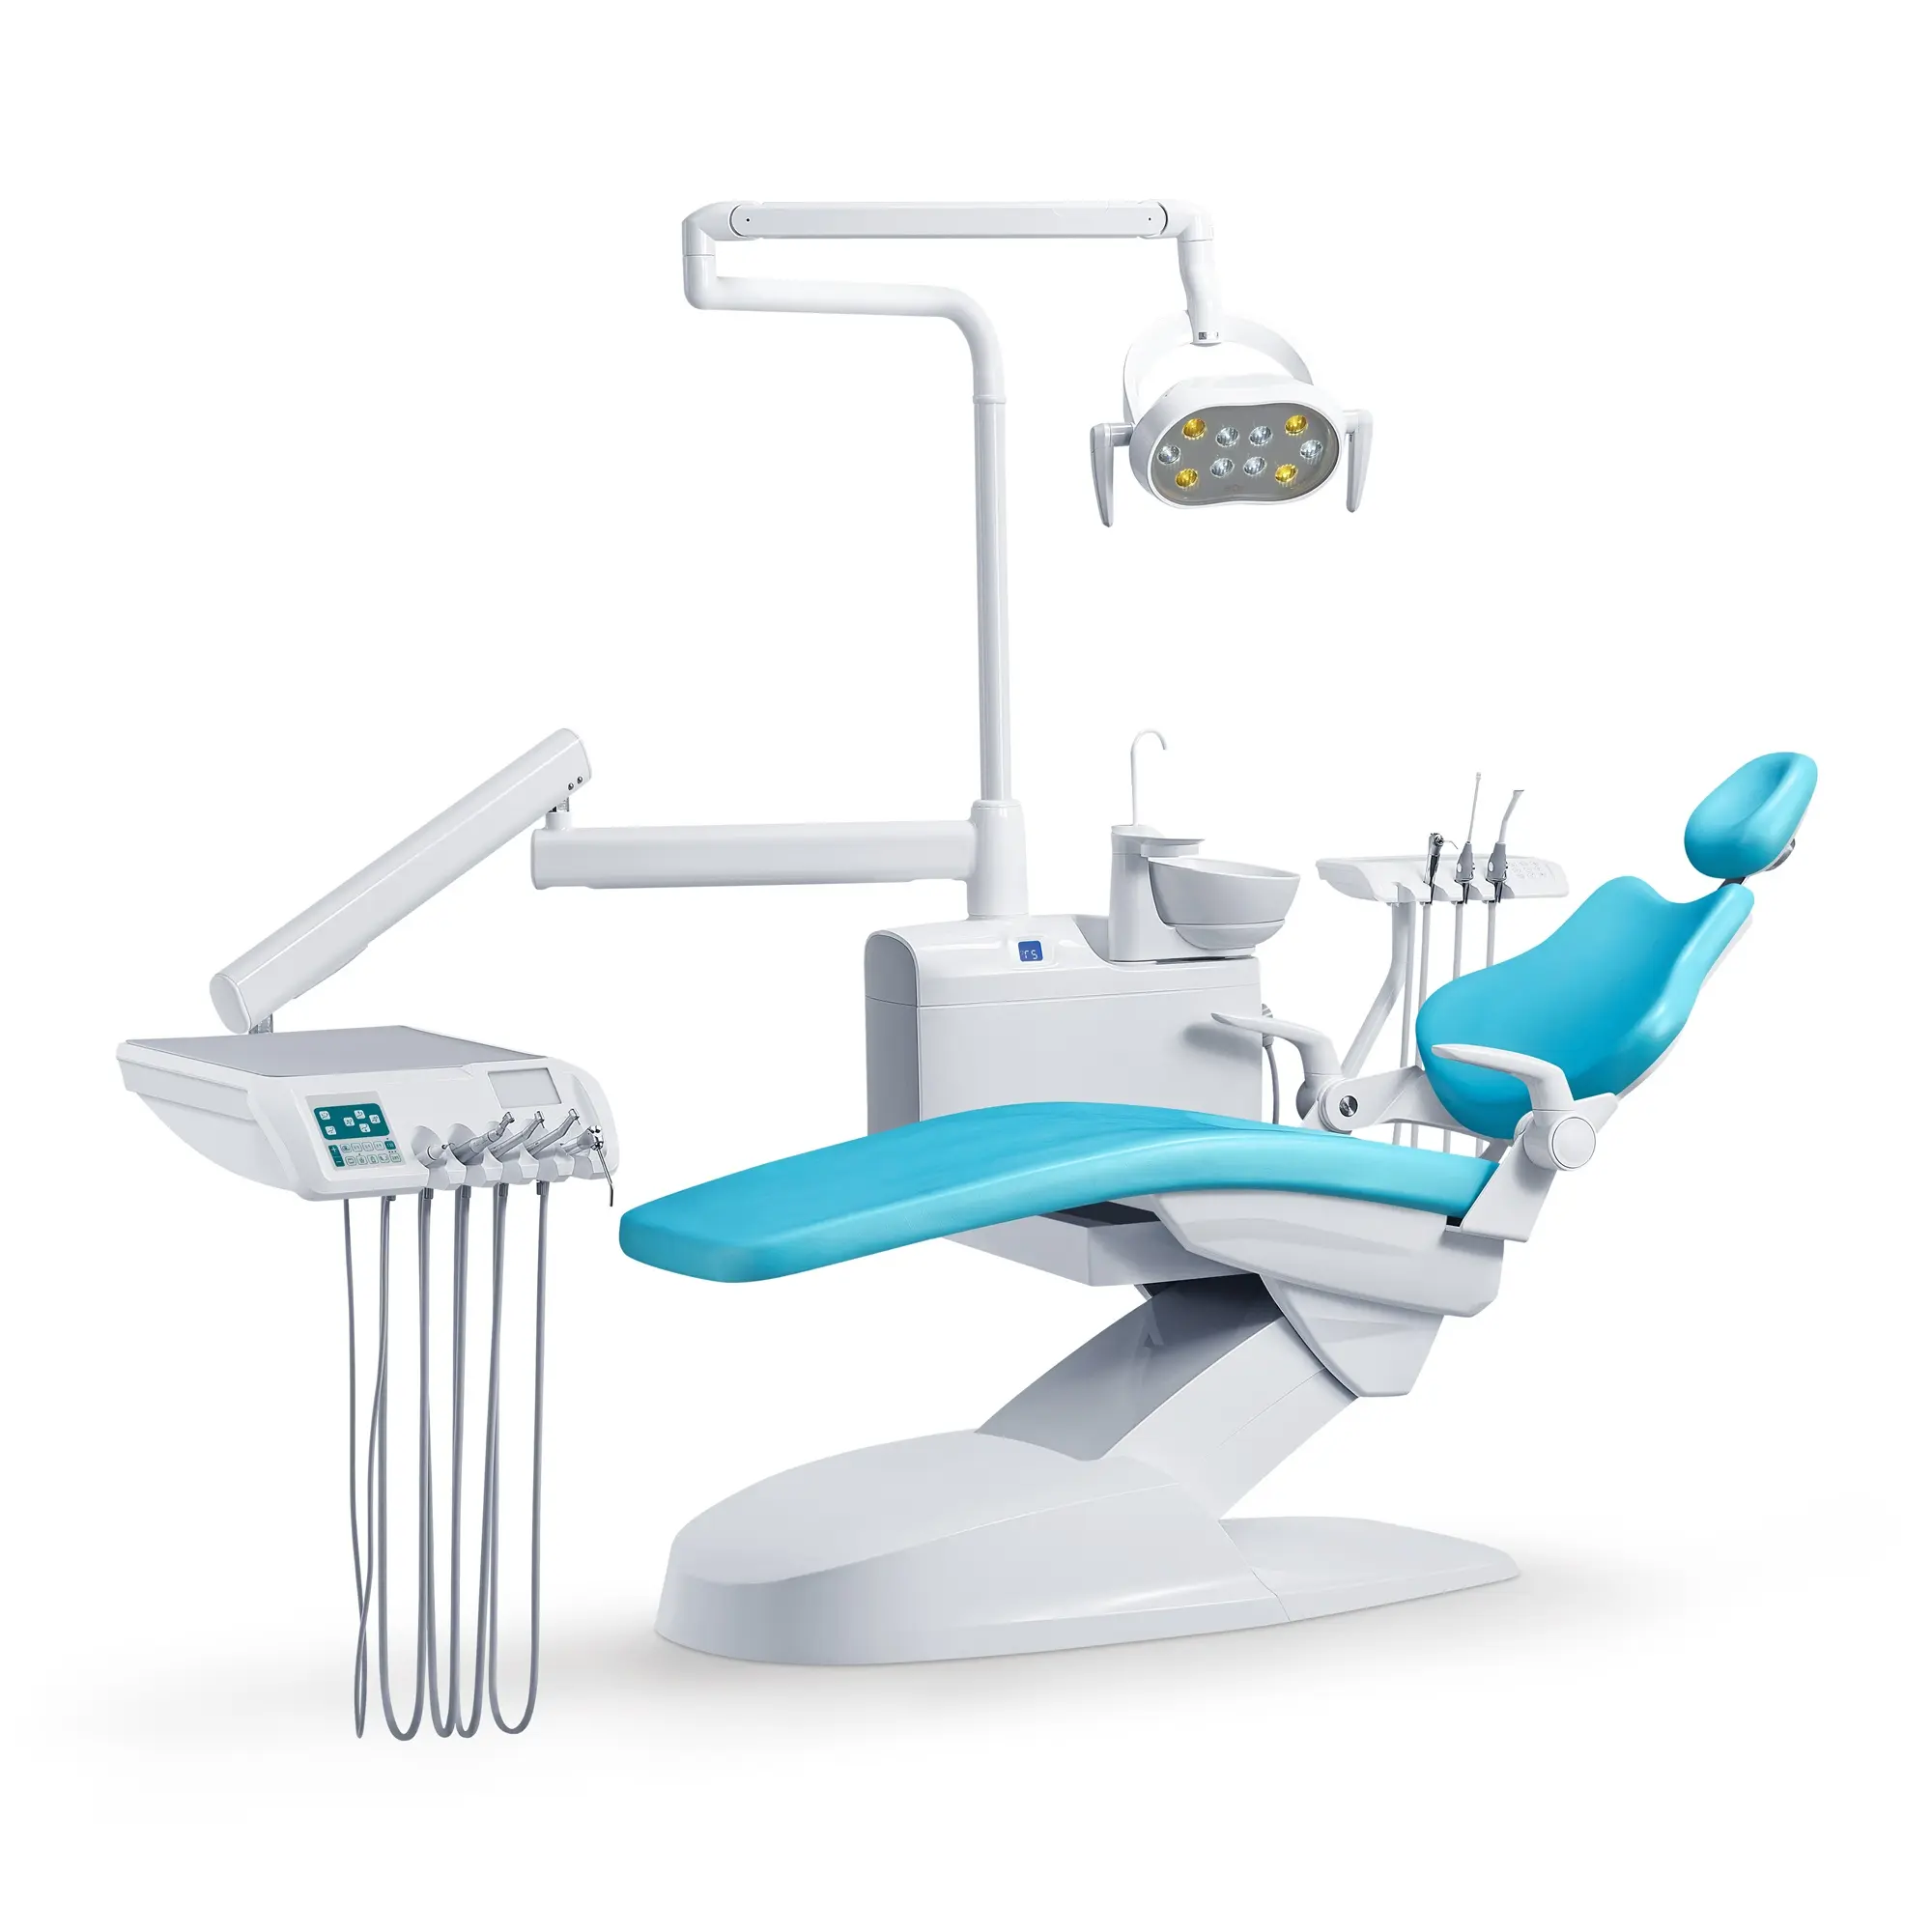 दंत इकाई उपकरणों की एक दंत चिकित्सक मल मूल्य के साथ सबसे अच्छा बिक्री आर्थिक सस्ती दंत कुर्सी उत्पाद